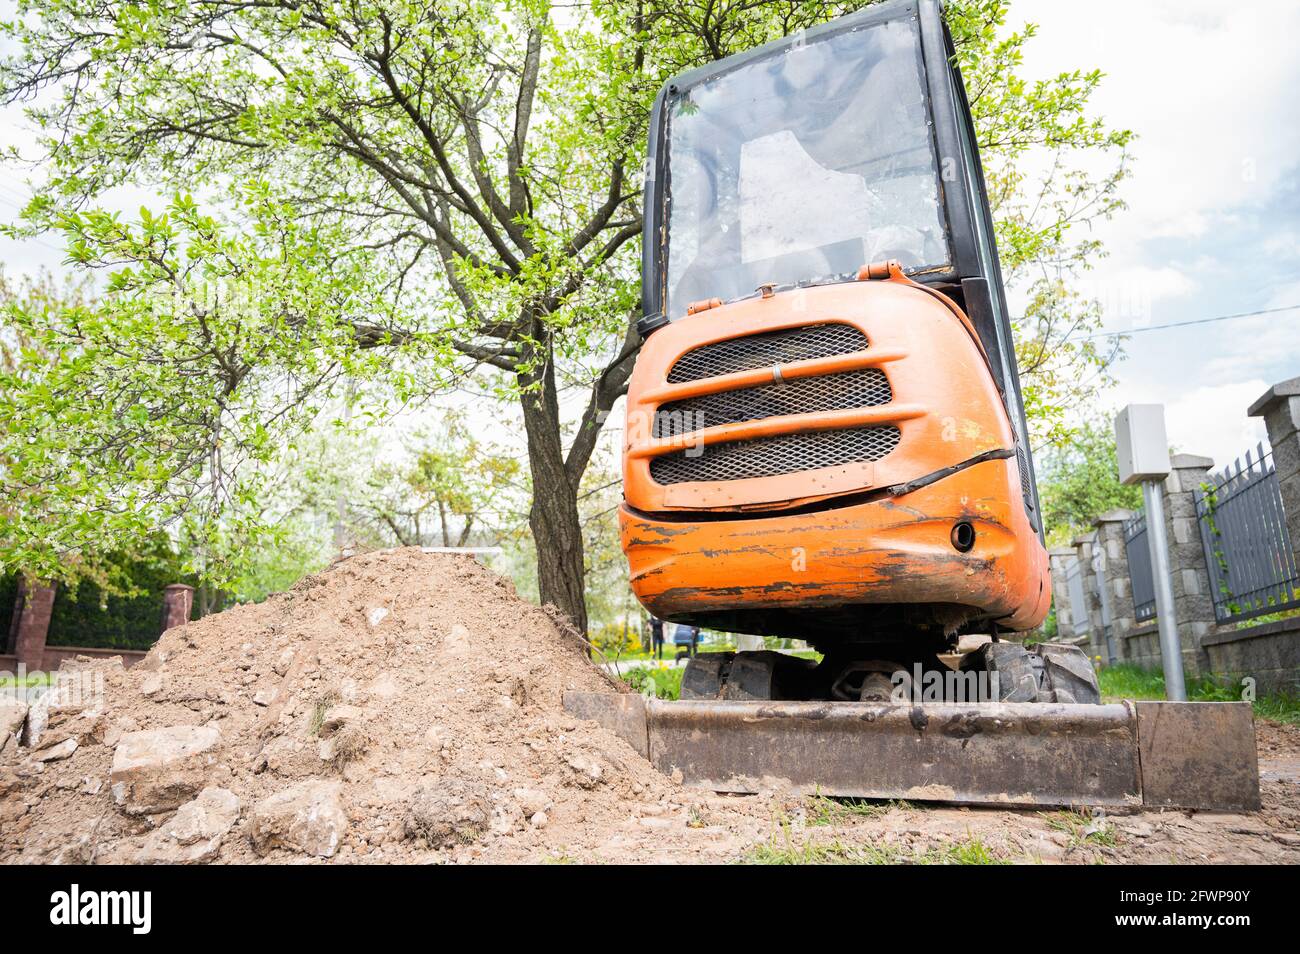 Mini escavatore in colore arancione. Noleggio attrezzature da costruzione. Foto Stock